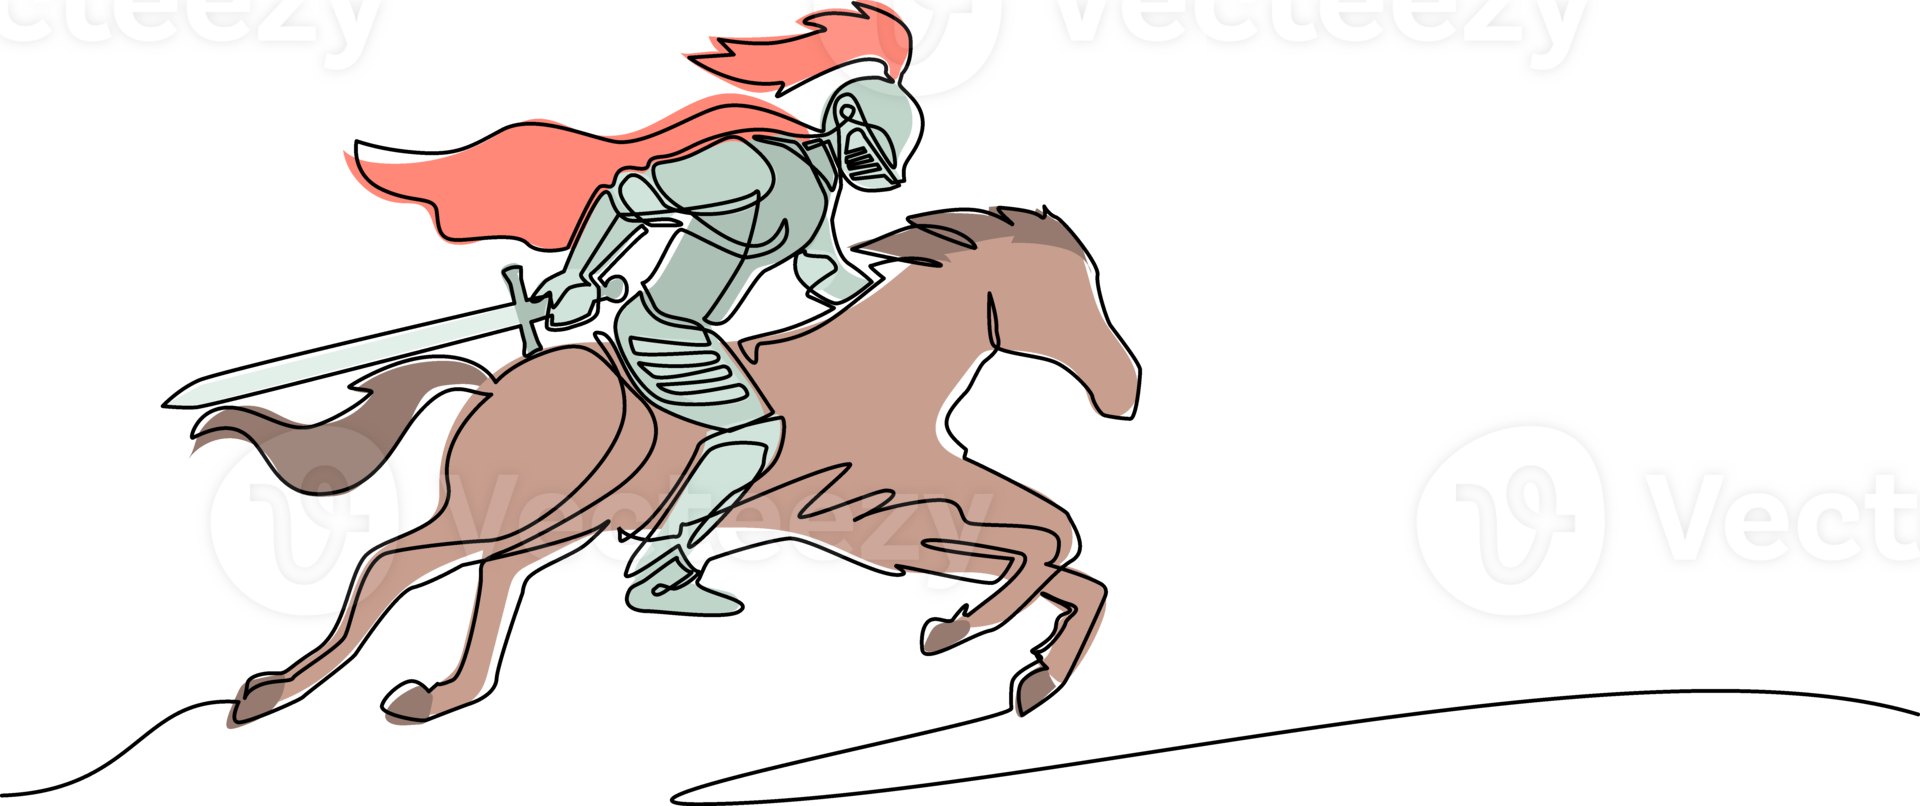 enda ett linje teckning medeltida riddare ridning häst - häst soldat med svärd och skydda. riddare på hästryggen. medeltida heraldik symbol. kontinuerlig linje dra design grafisk illustration png